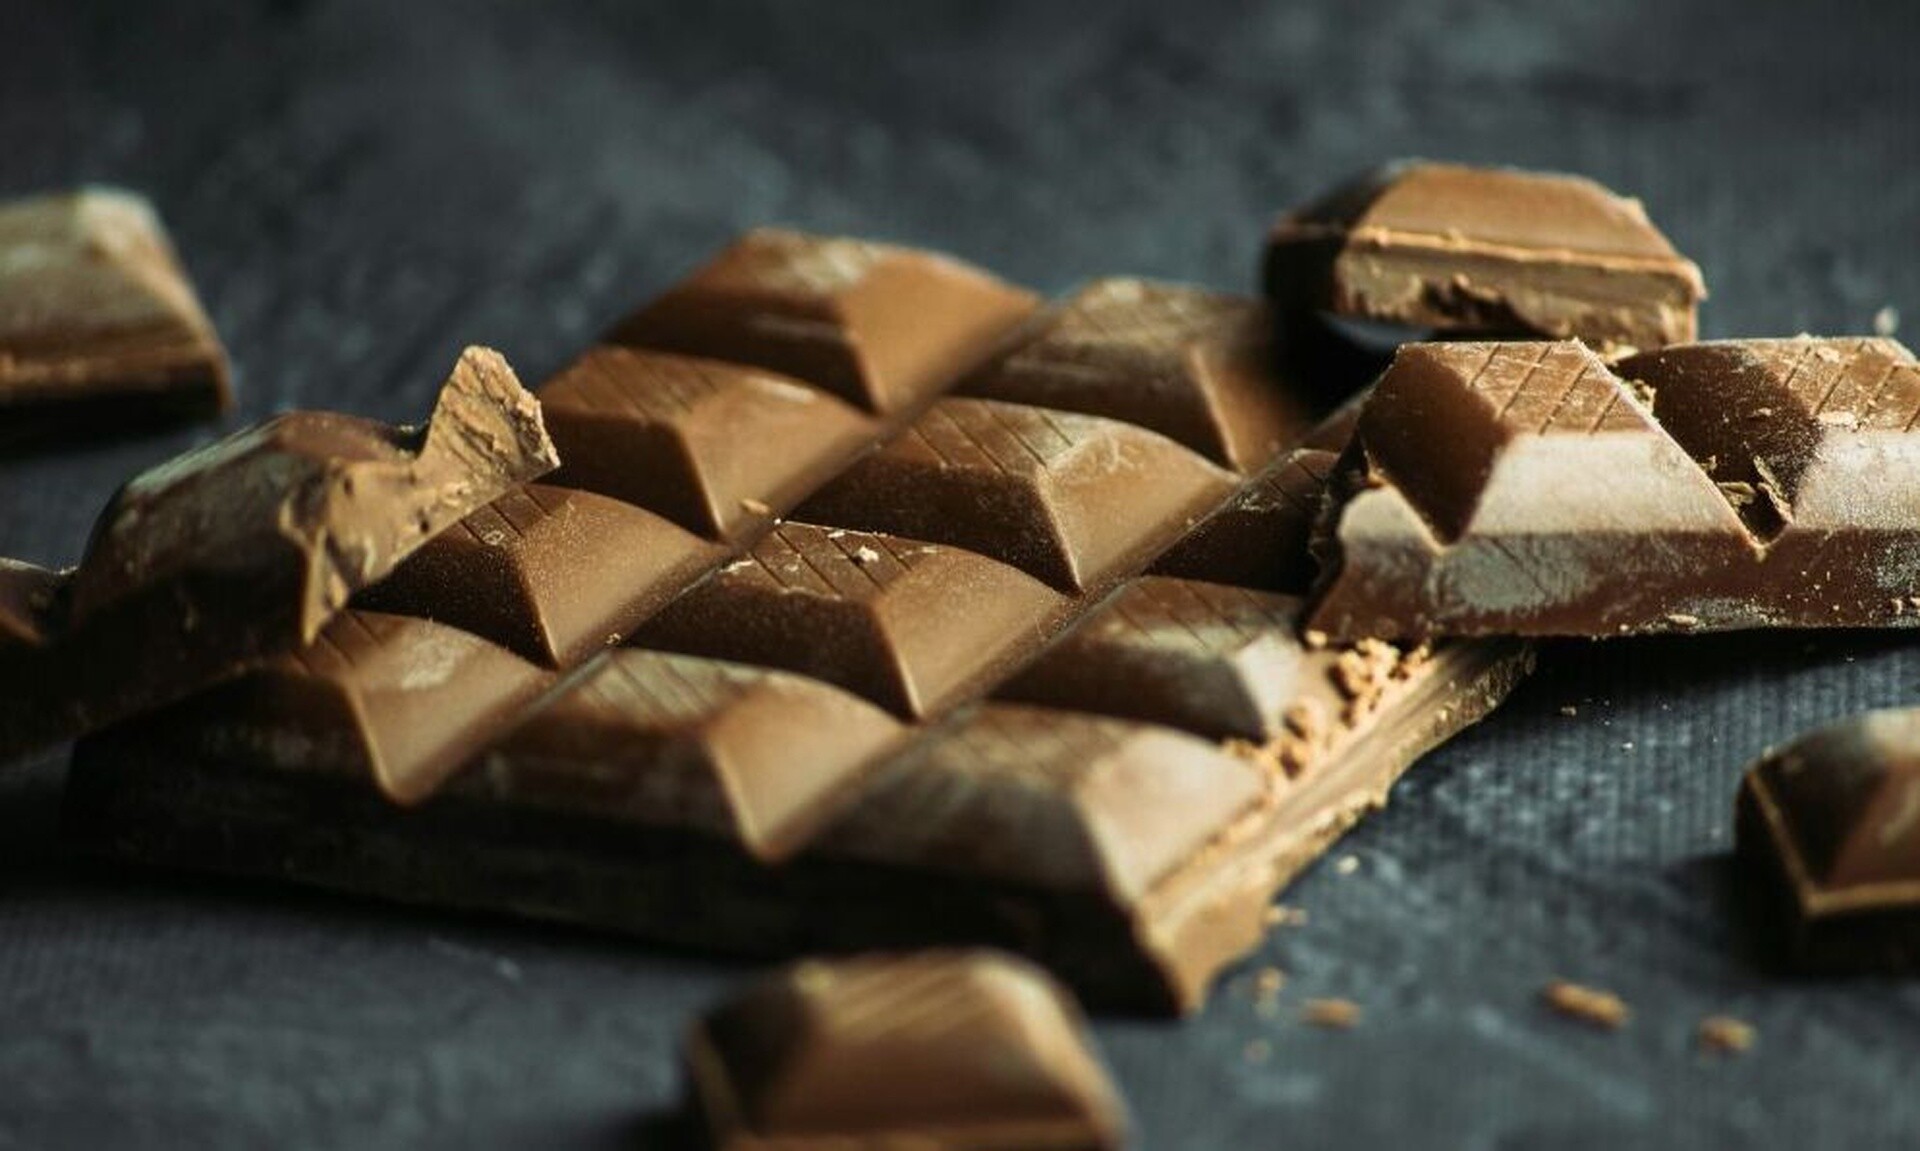 Έρχεται διπλασιασμός στην τιμή της σοκολάτας; Οι δυσοίωνες εκτιμήσεις